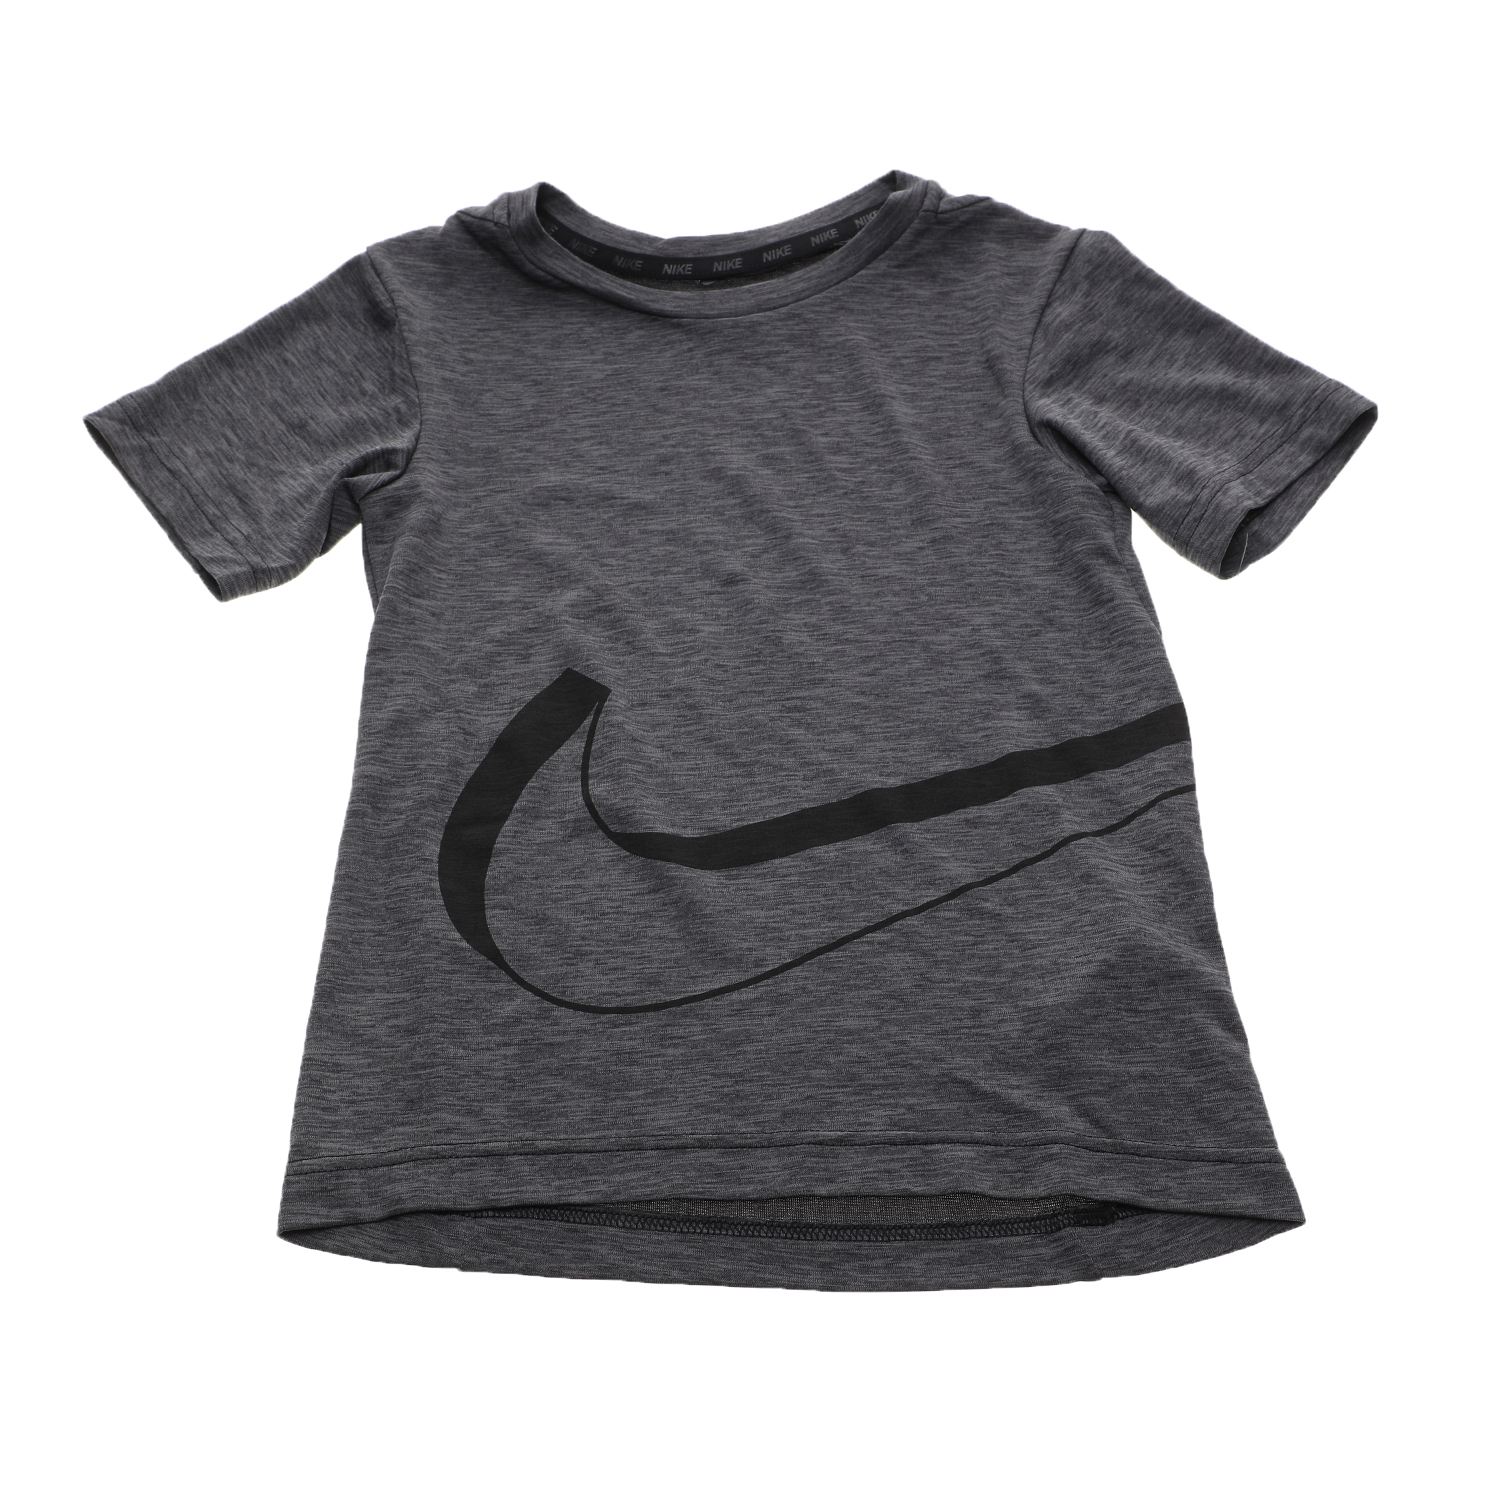 Παιδικά/Boys/Ρούχα/Αθλητικά NIKE - Παιδικό t-shirt για αγόρια Nike Breathe HPR DRY GFX γκρι